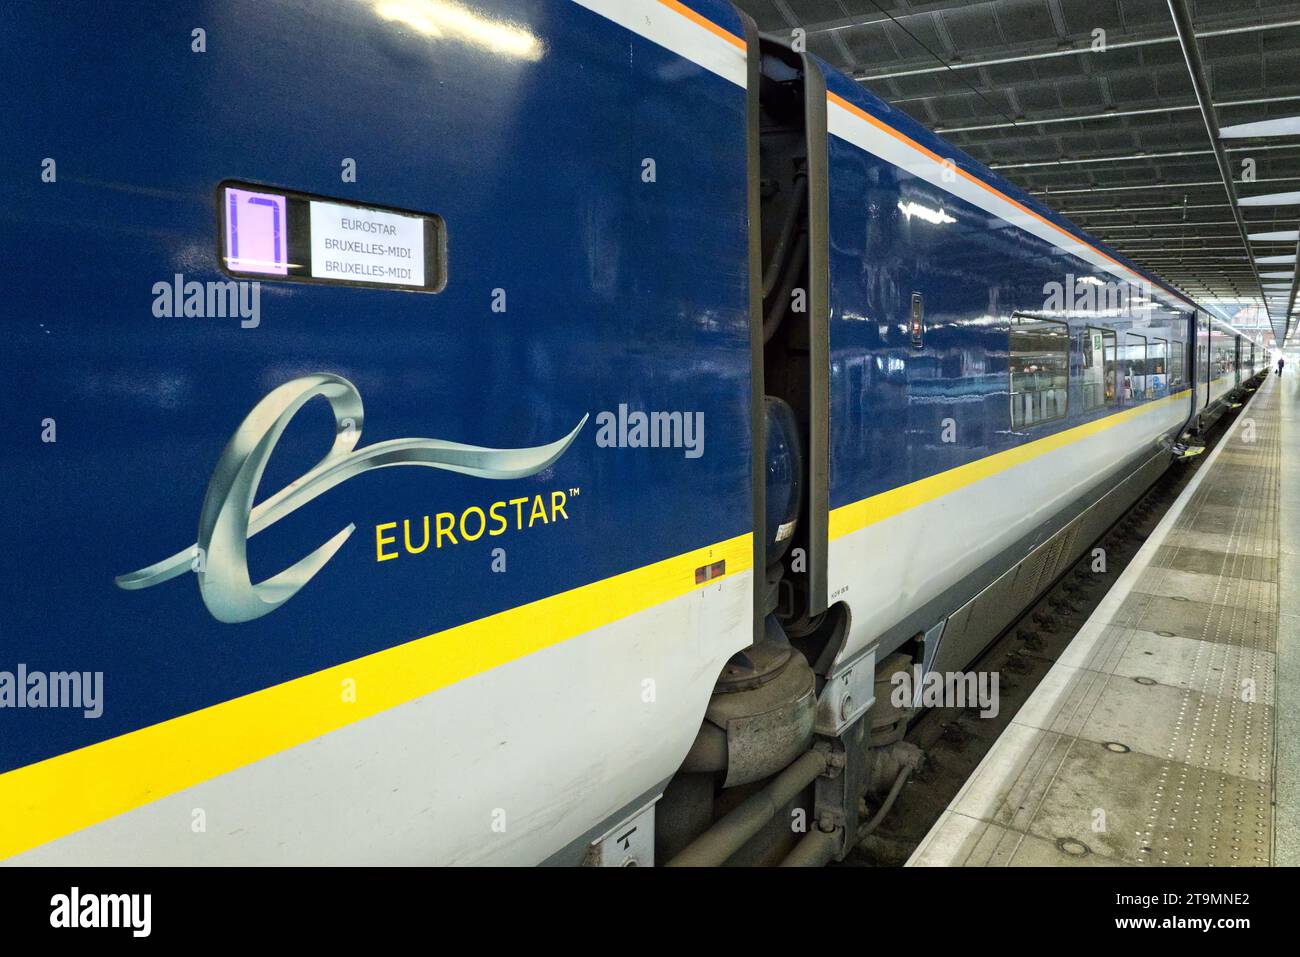 Treno Eurostar diretto a Bruxelles in Belgio al binario pronto per partire dalla stazione ferroviaria internazionale di St Pancras a Londra, Inghilterra, Regno Unito Foto Stock